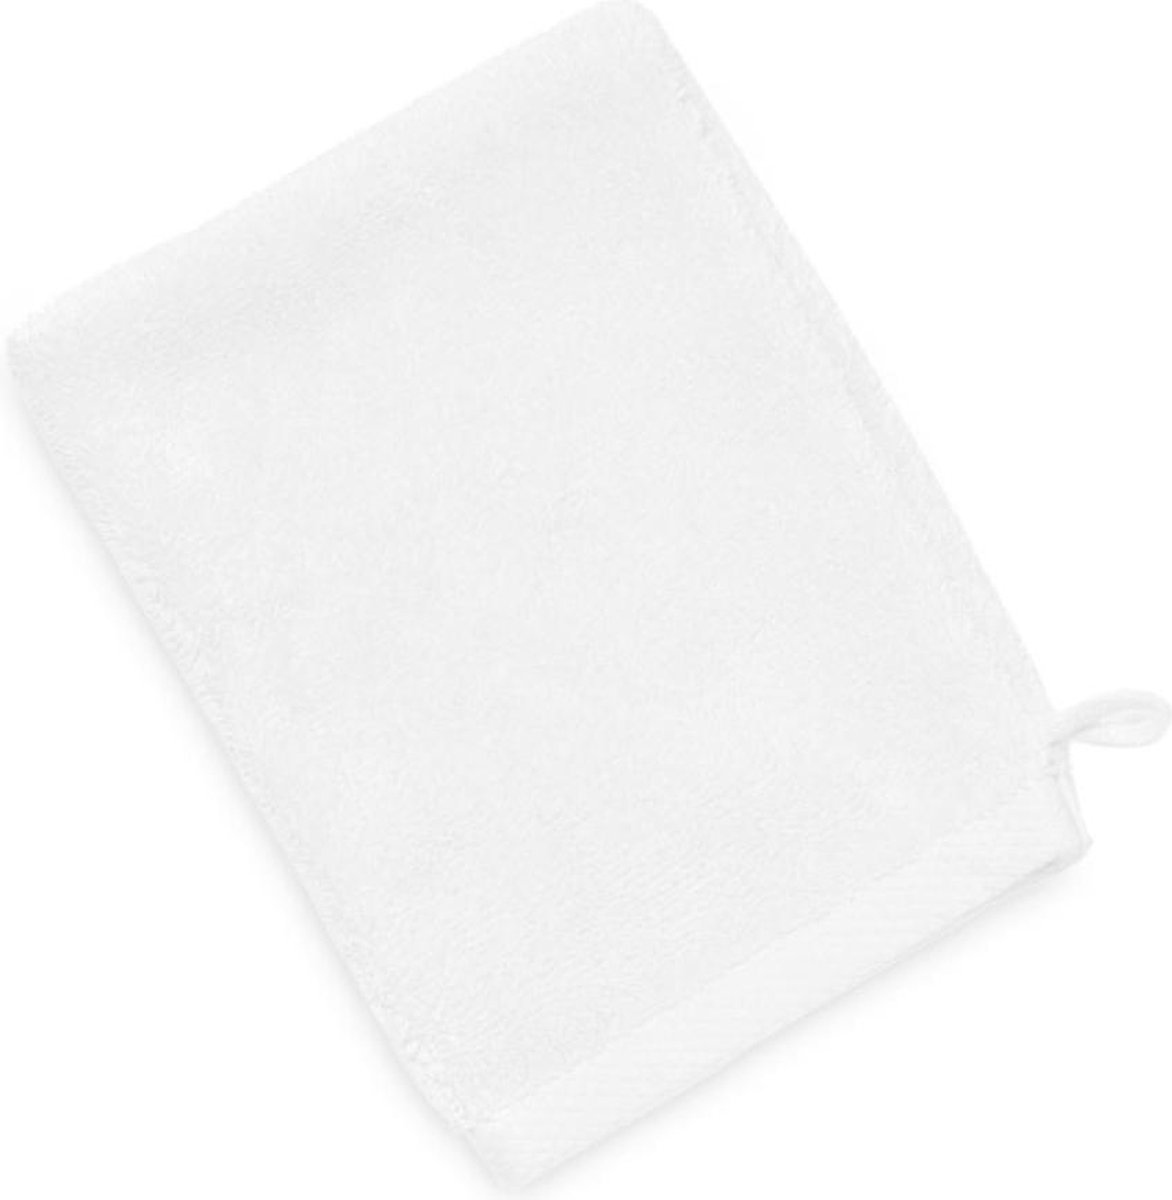 Heckettlane Heckett & Lane 6-pack katoen washandjes wit 16x21 luxe uitstraling huidvriendelijk en duurzaam